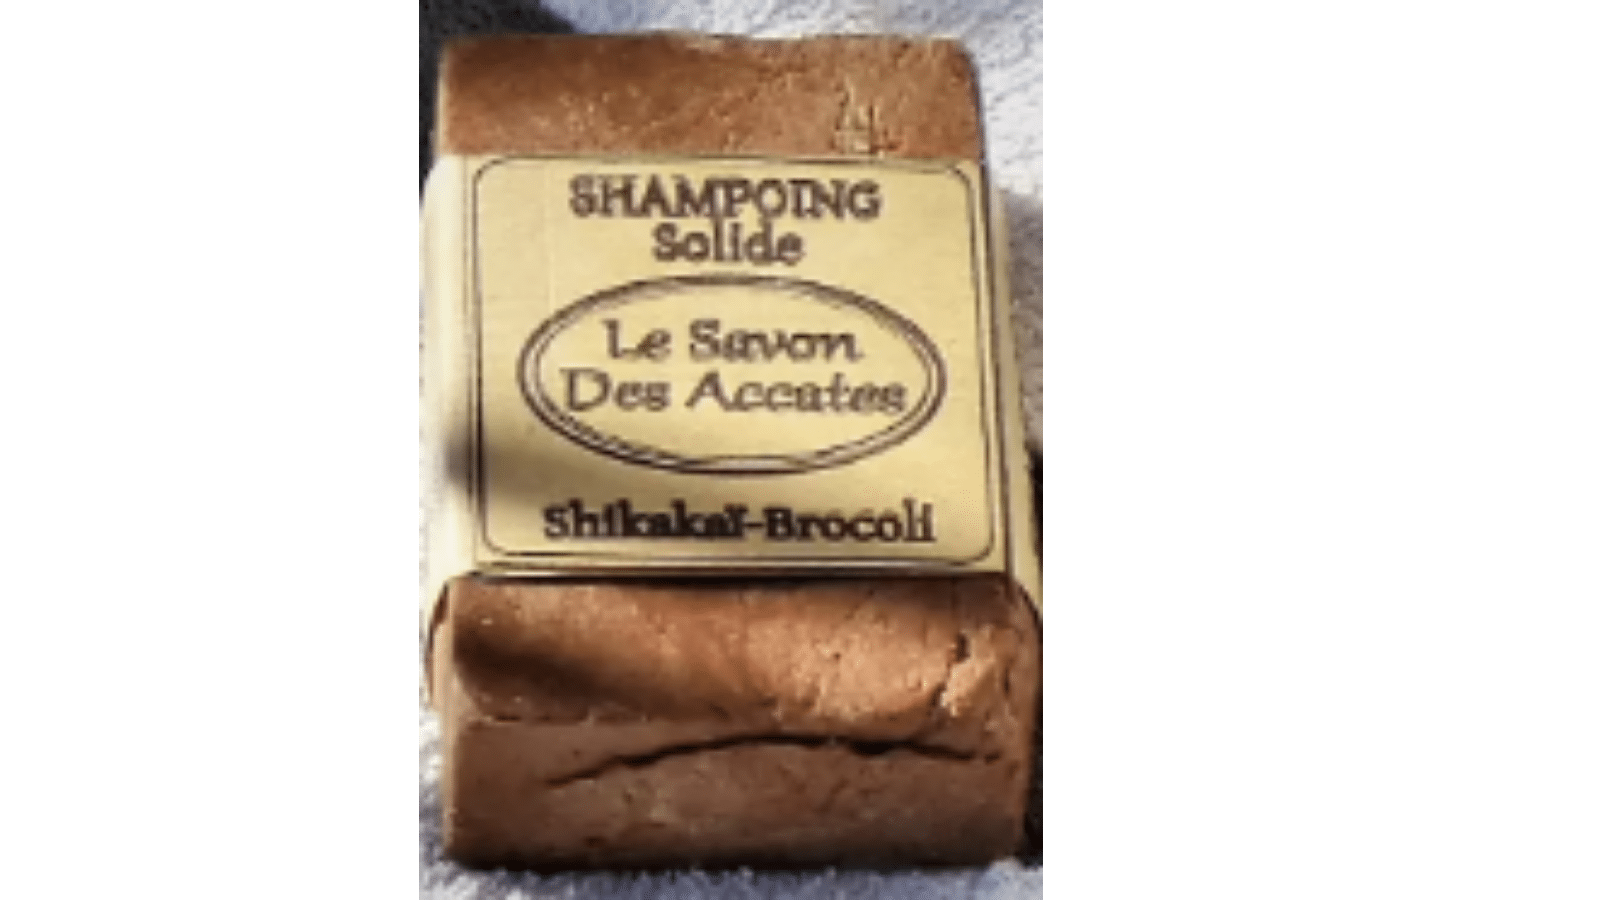 Test du Shampooing solide par "Le Savon Des Accates"